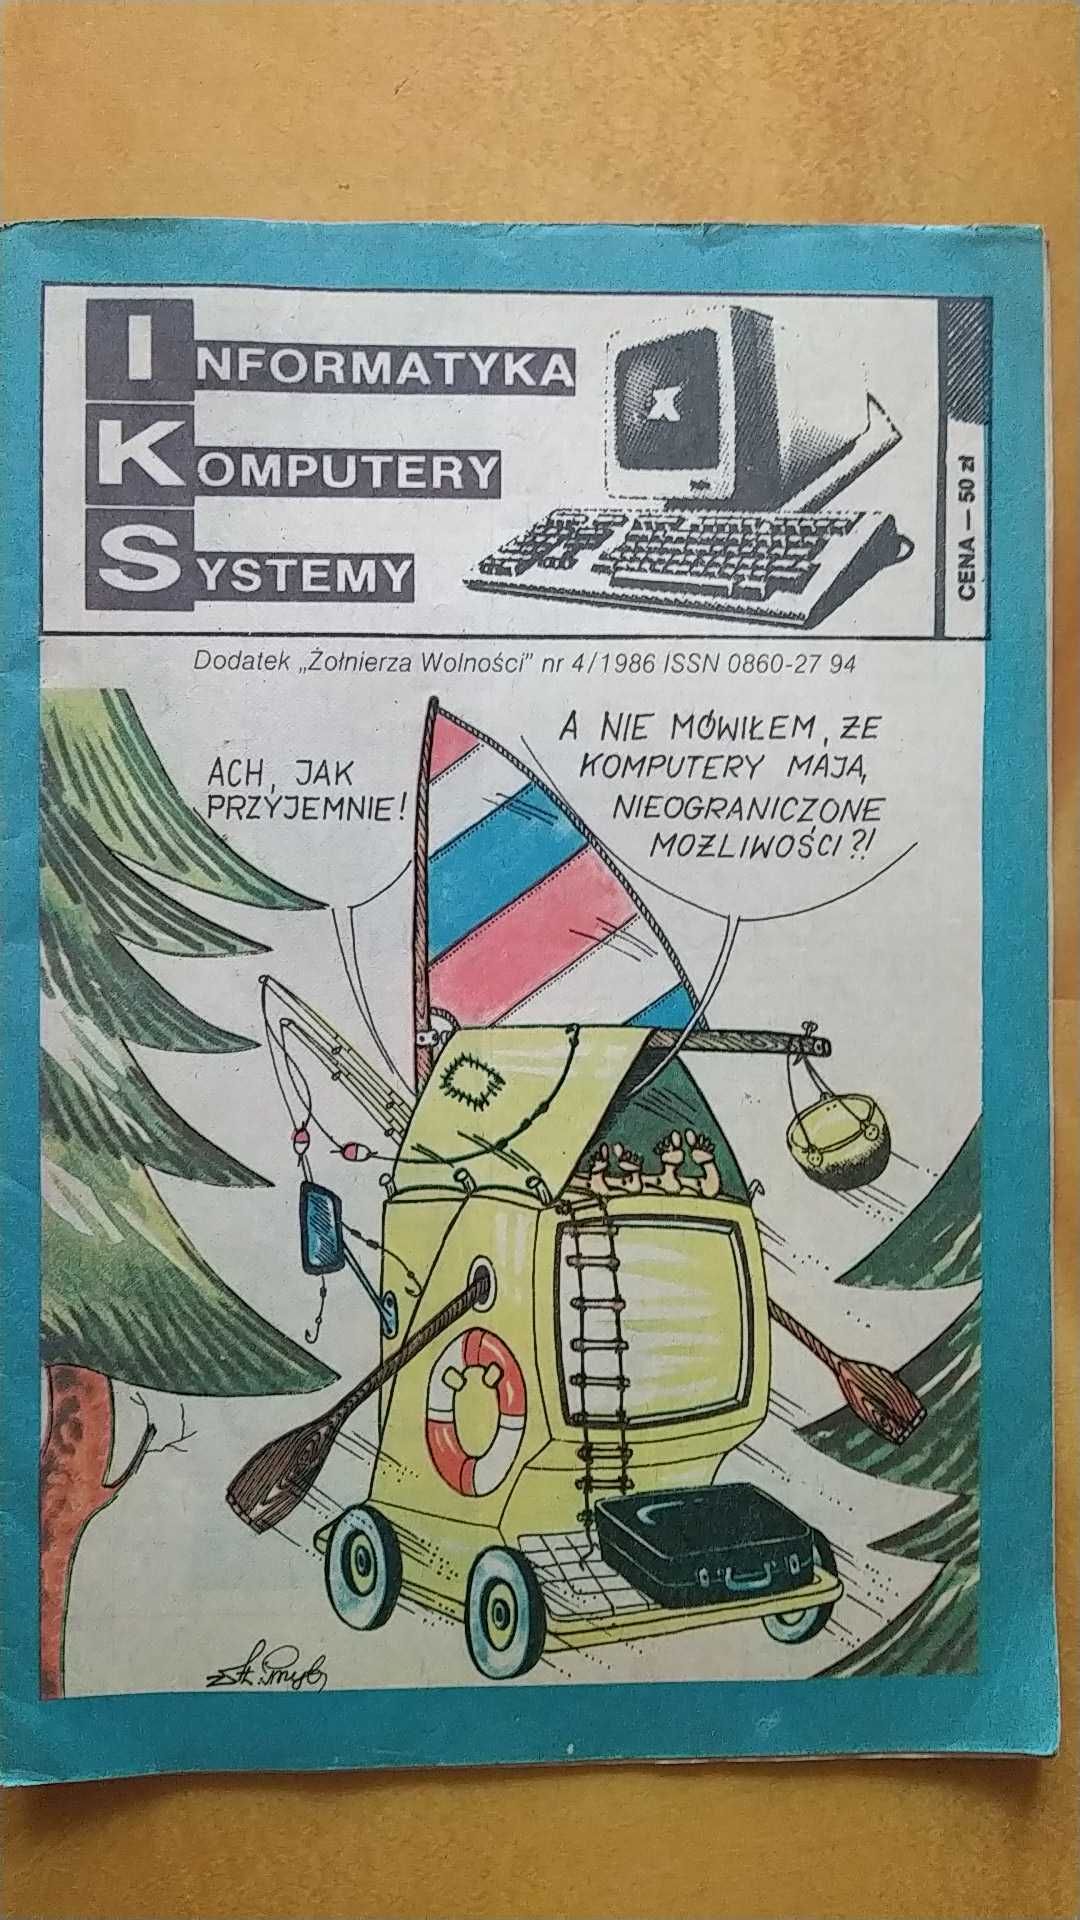 IKS Informatyka Komputery Systemy nr 4/1986